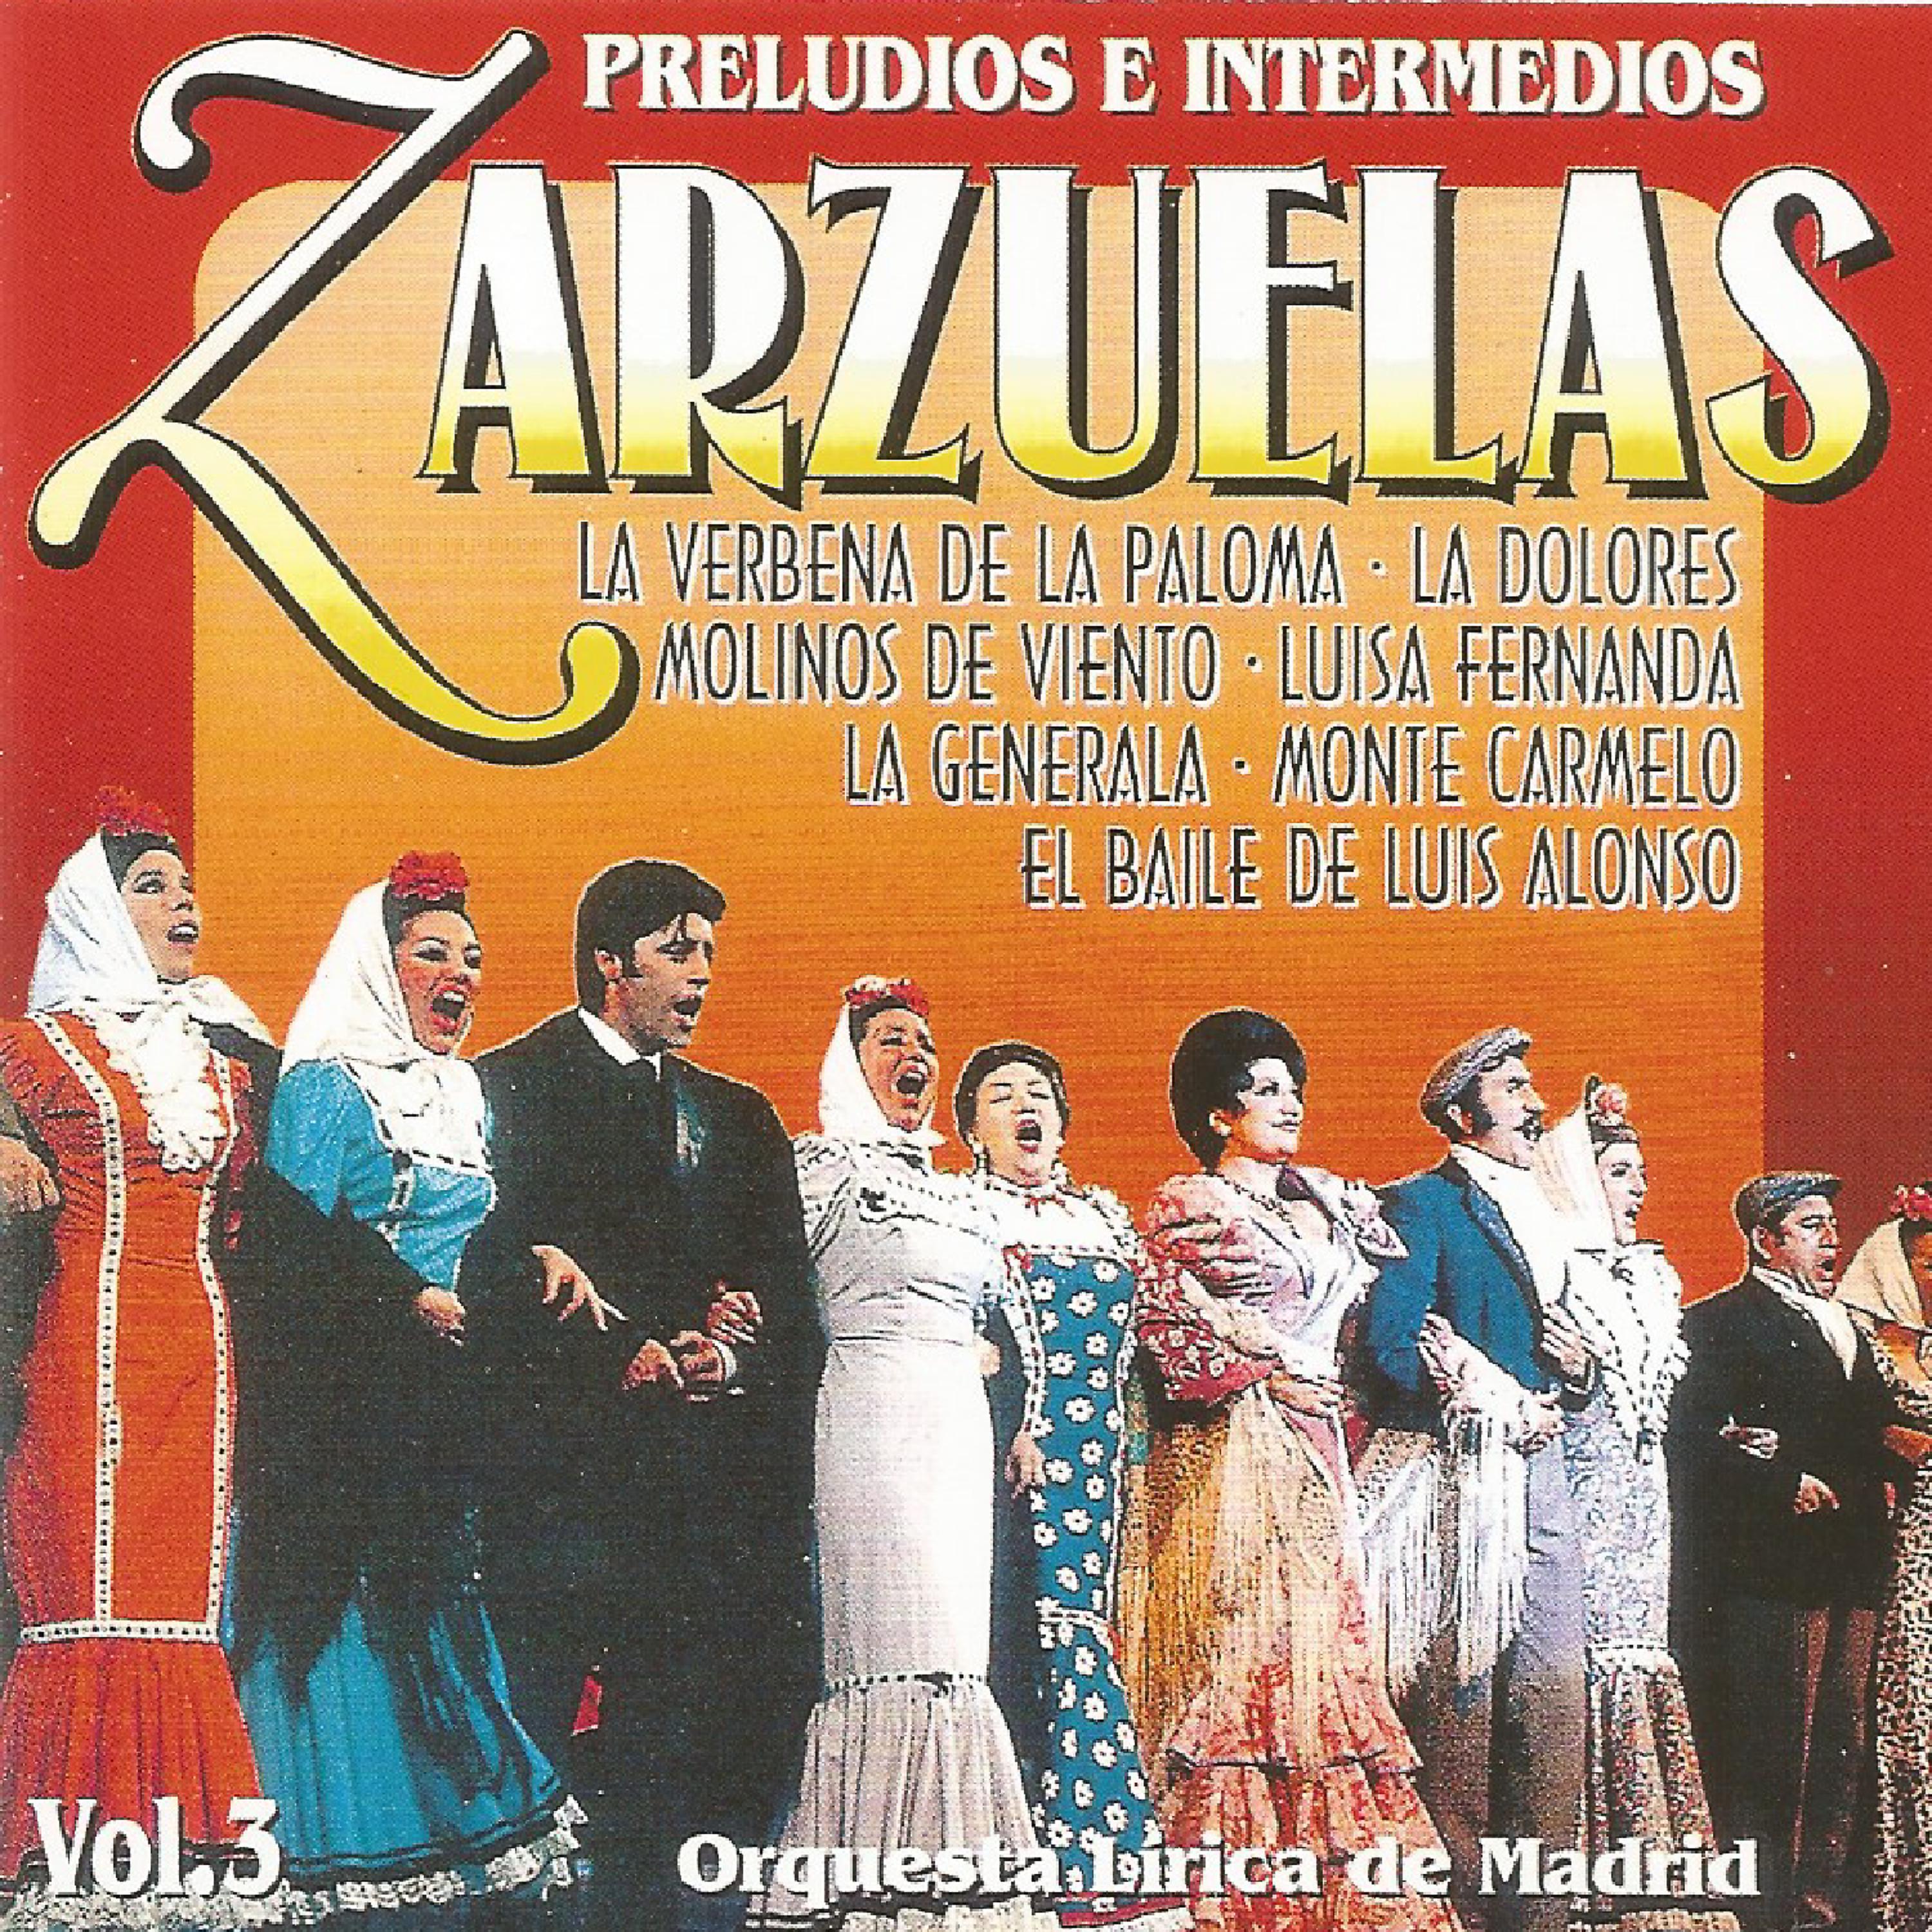 Постер альбома Zarzuelas - Vol. 3 - Preludios e intermedios